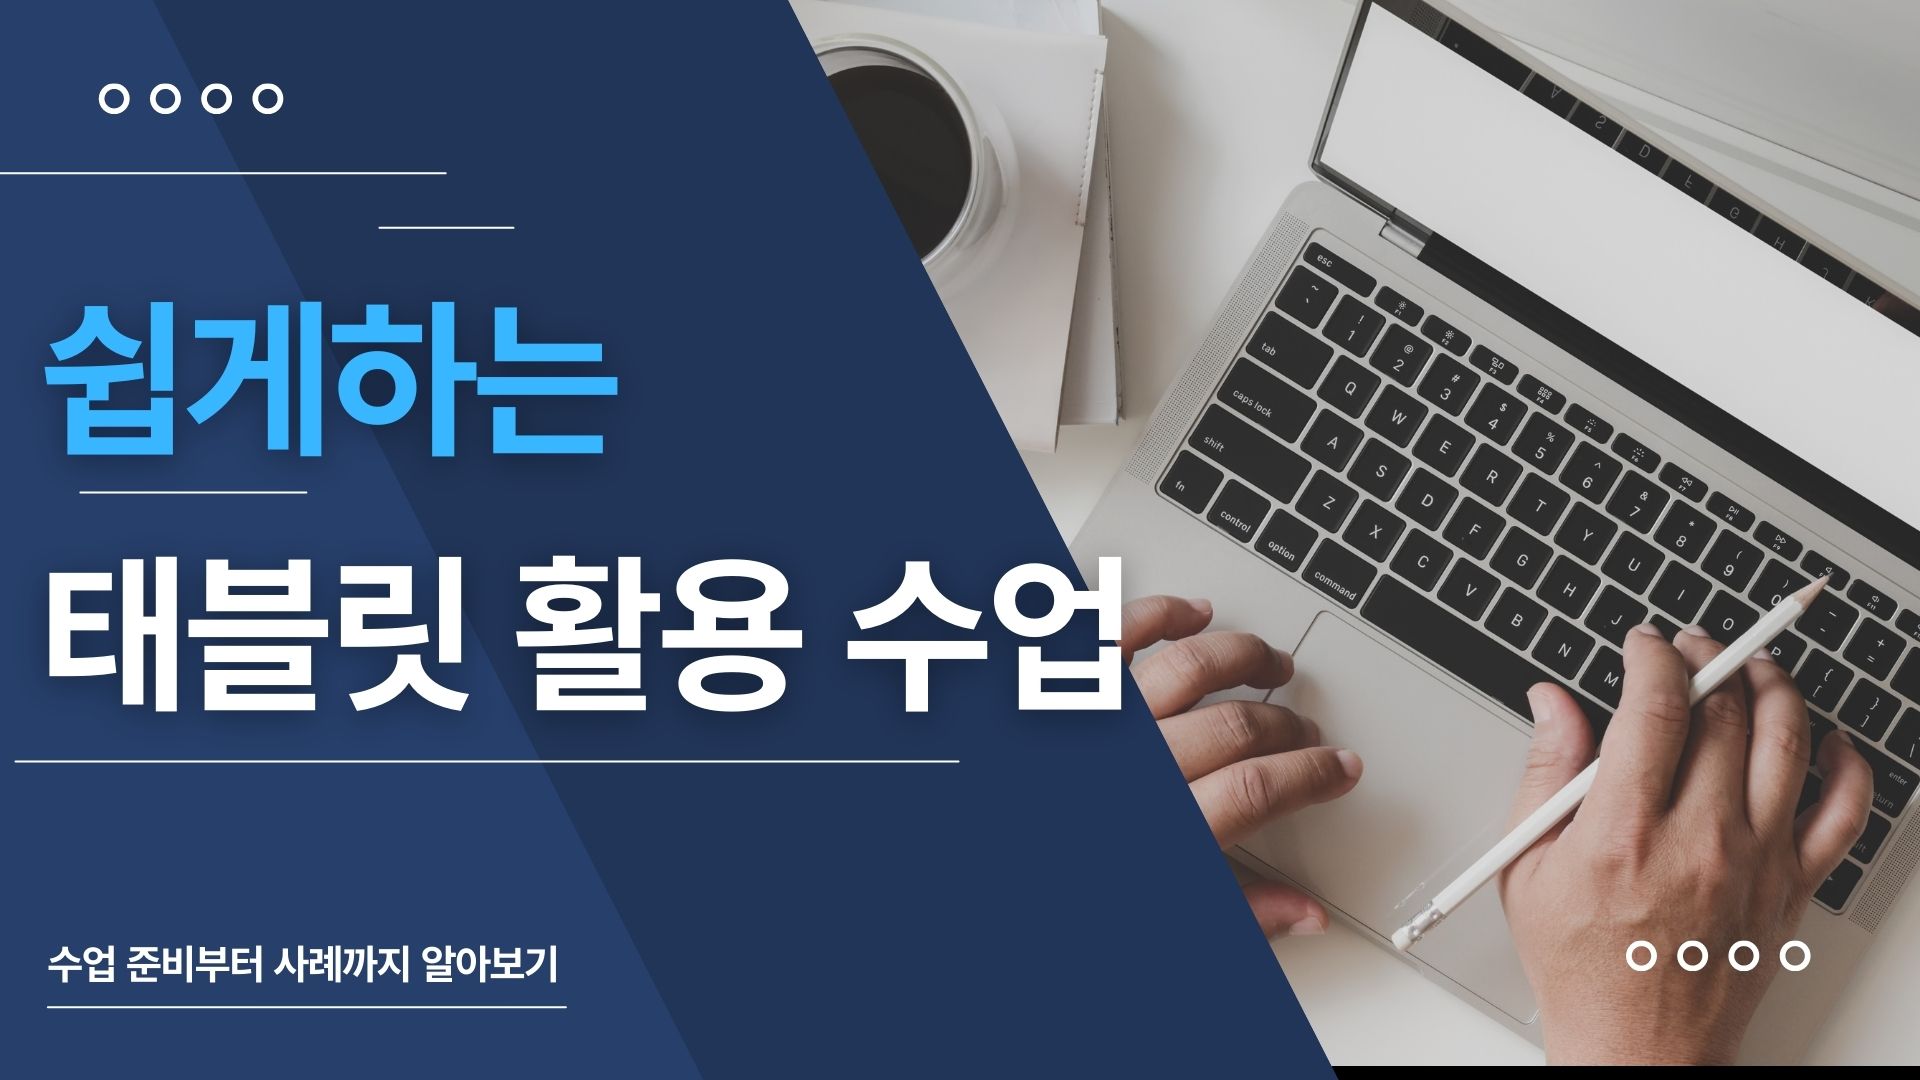 '태블릿 PC' 쉽고 재밌게 활용하기 (쉽게하는 수업준비부터 수업사례까지 알아봅시다!!)